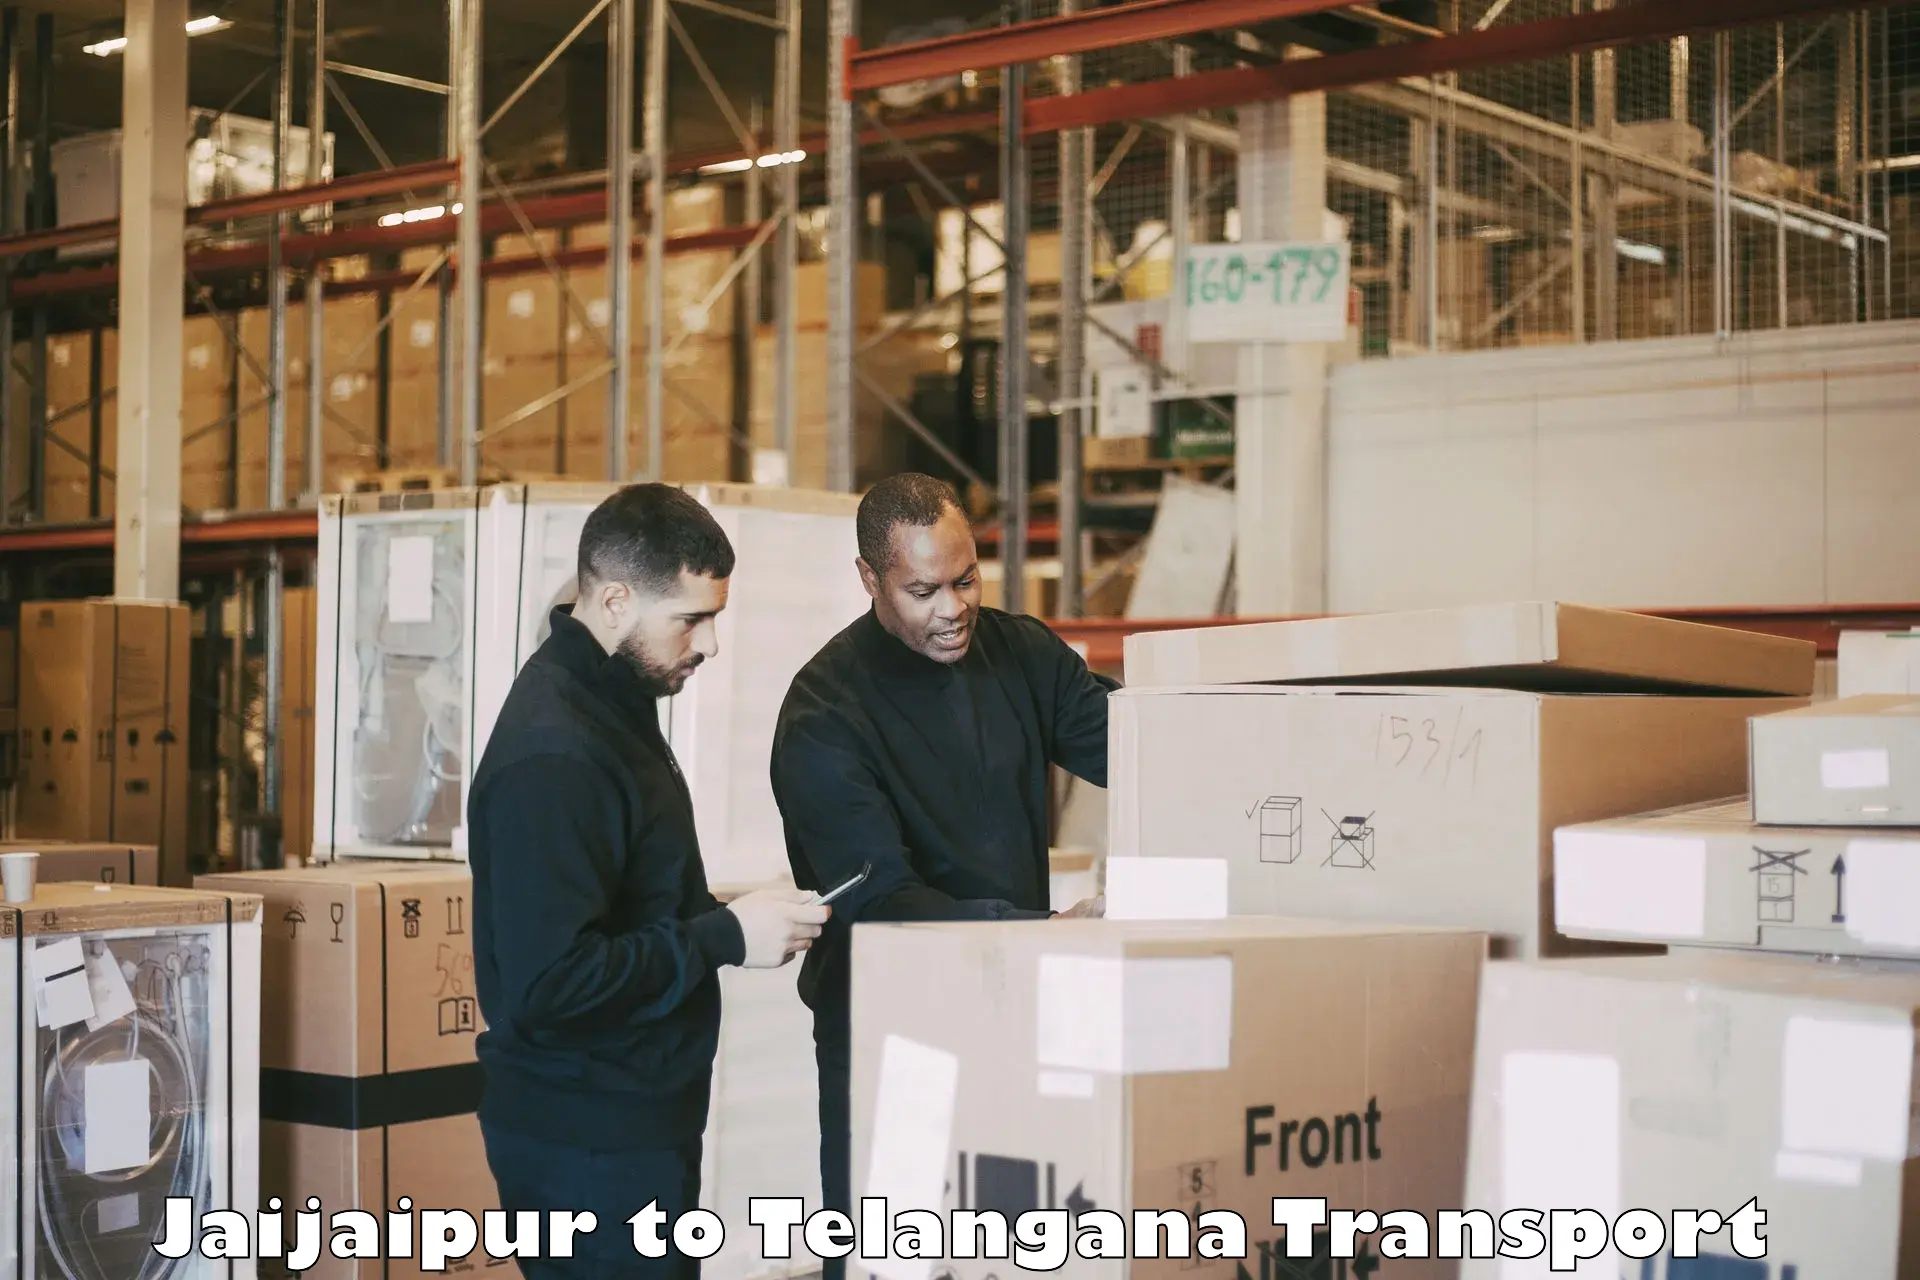 Vehicle transport services Jaijaipur to Sadashivpet